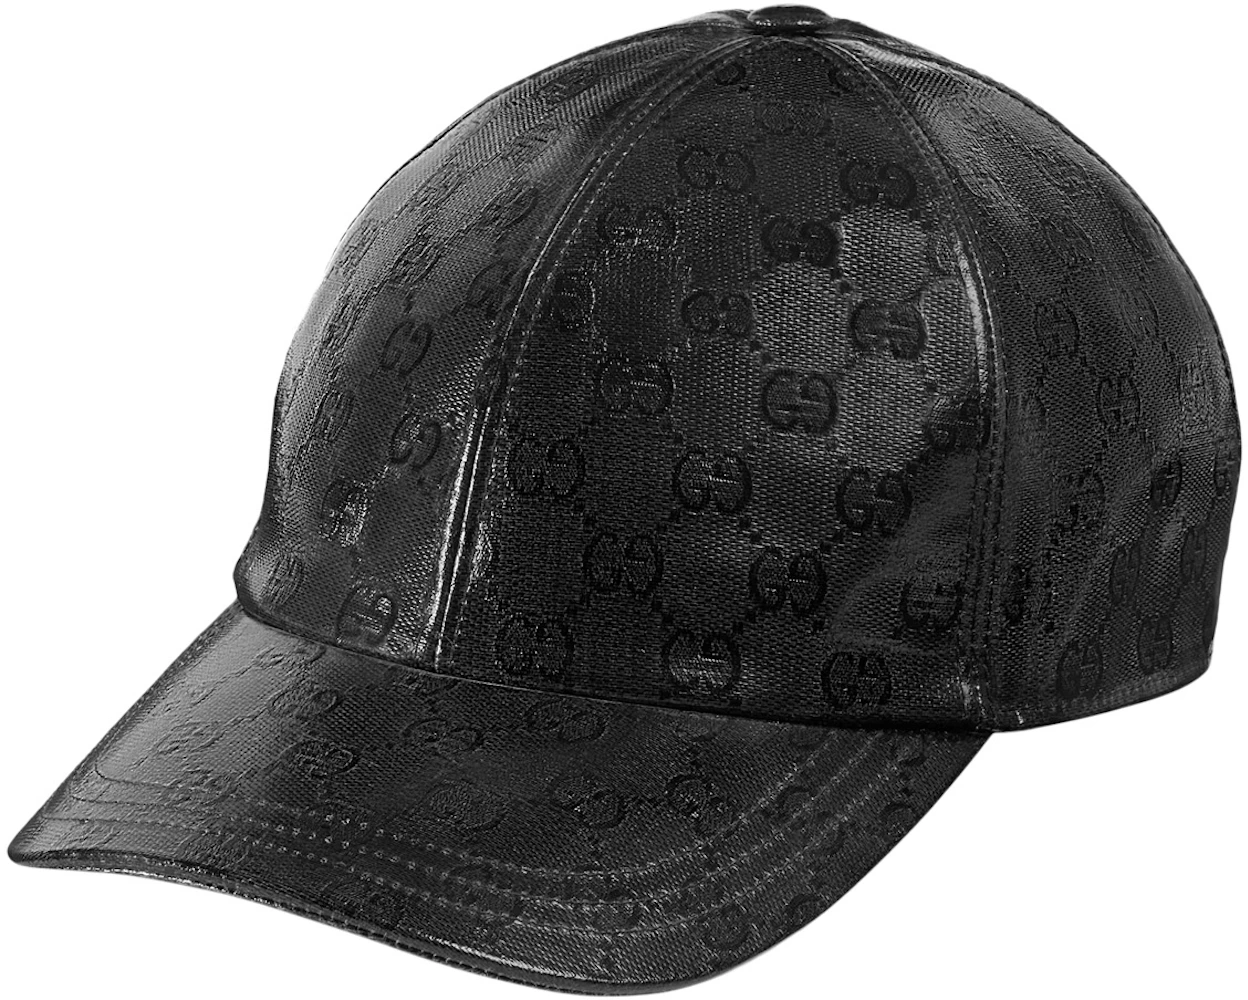 Gucci Gg Supreme Baseball Hat In Grey